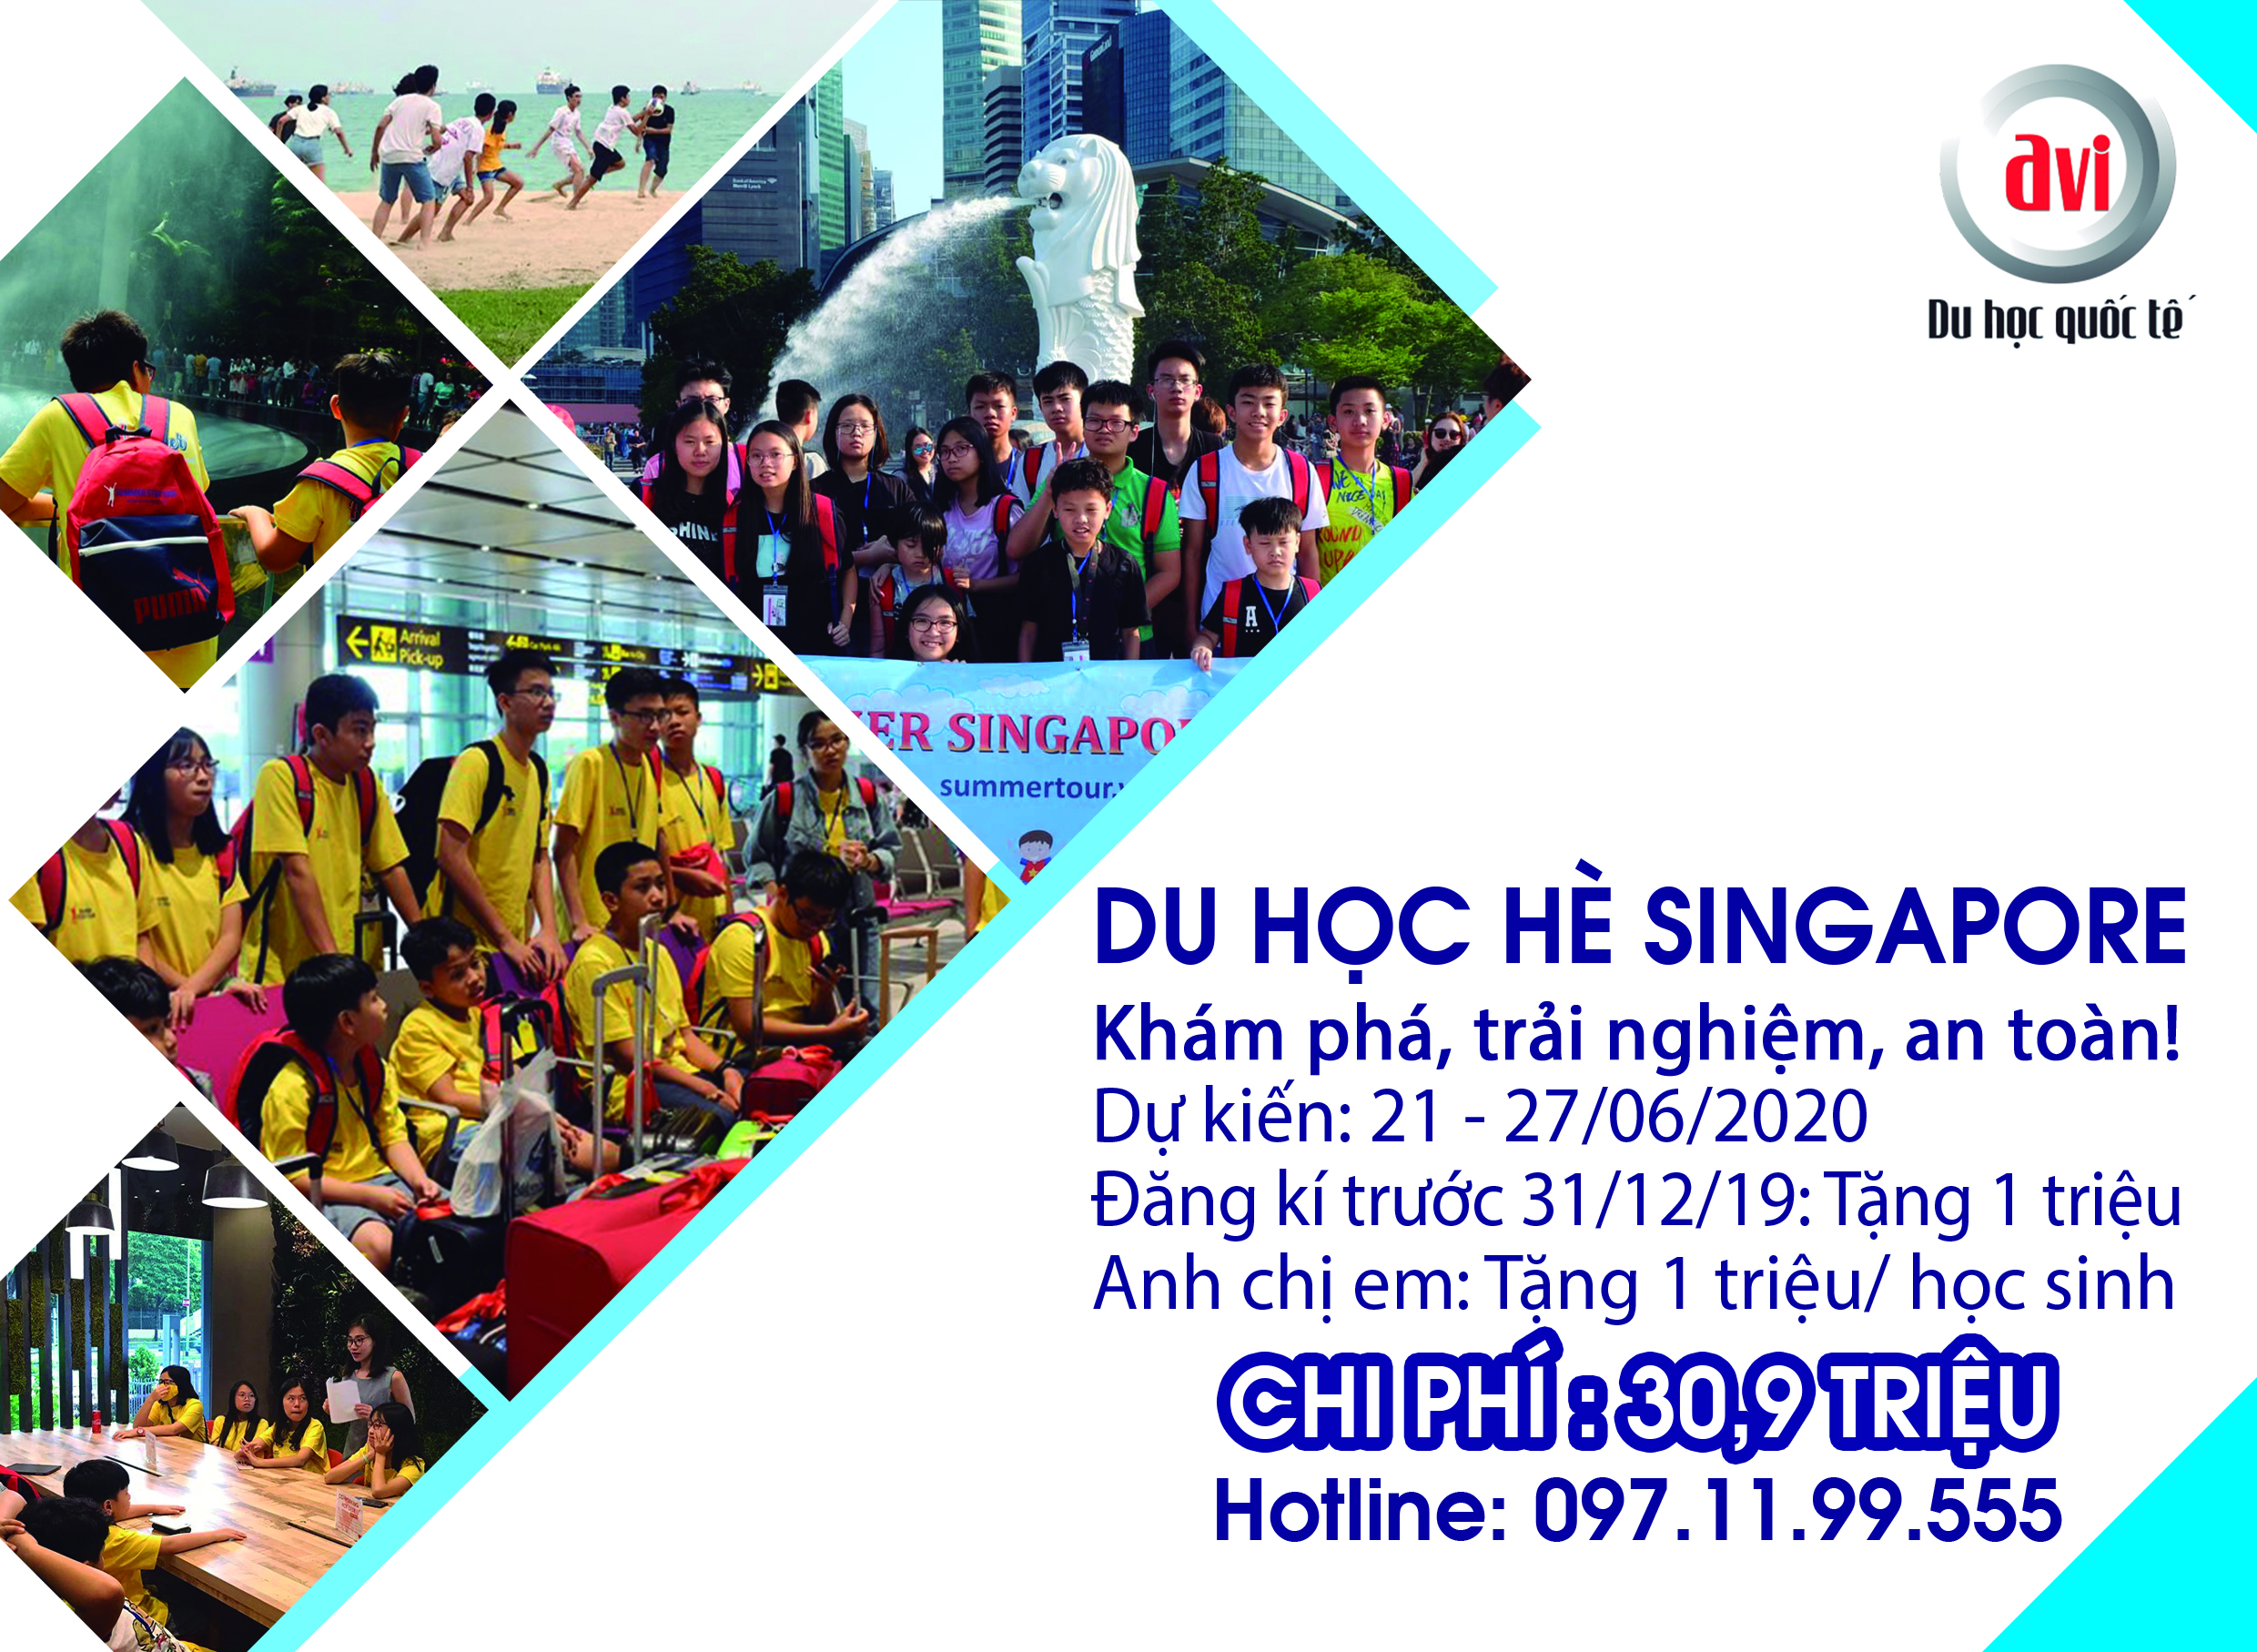 Chương trình du học hè Singapore 2020